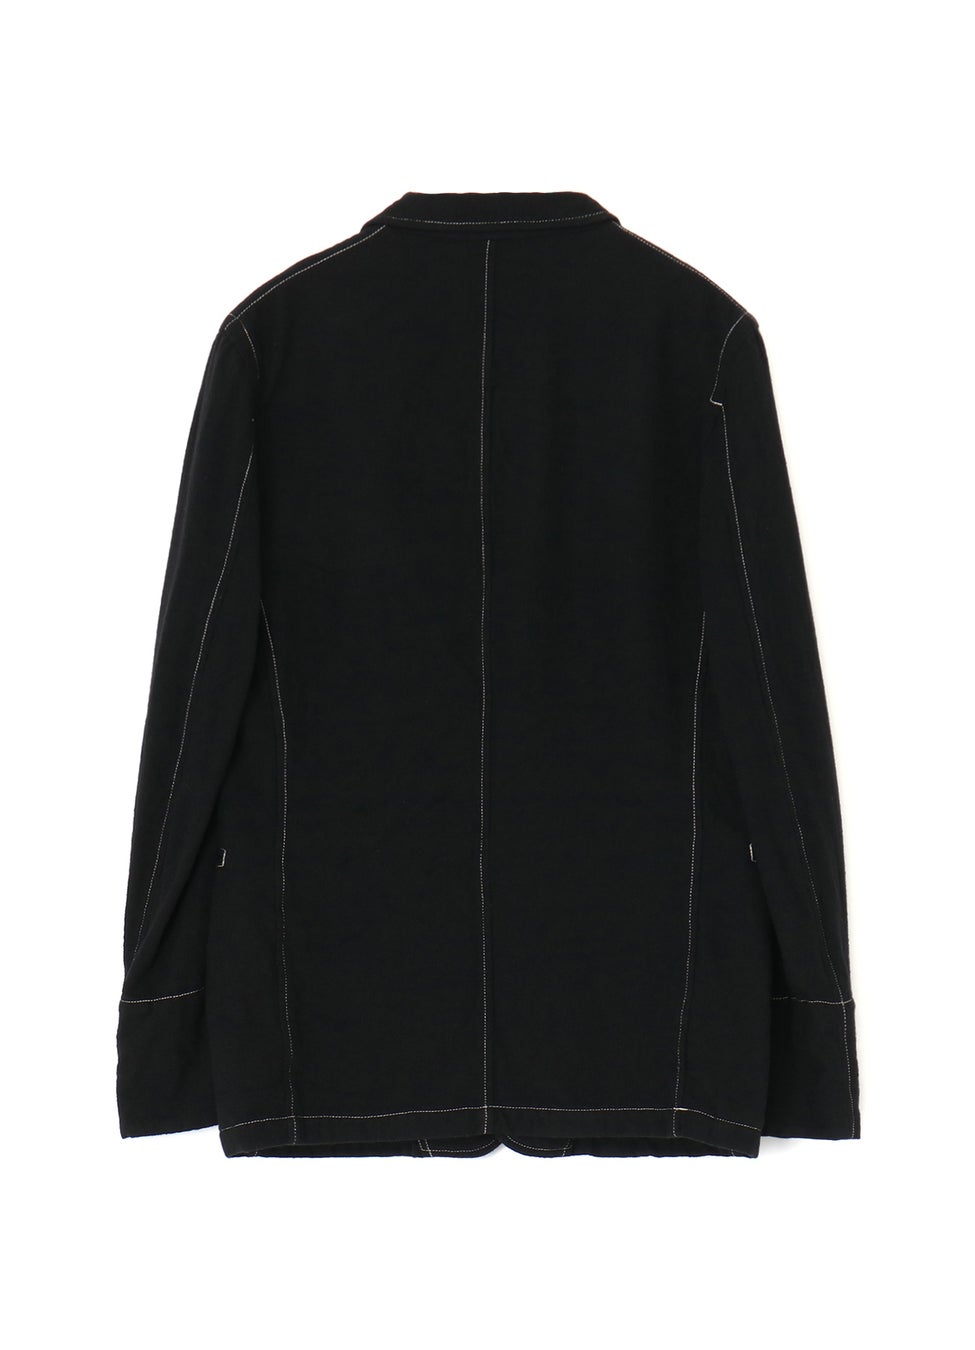 WILDSIDE YOHJI YAMAMOTOオリジナルラインより縮絨ウールで仕立てたジャケット・パンツを11月29日(水)に発売